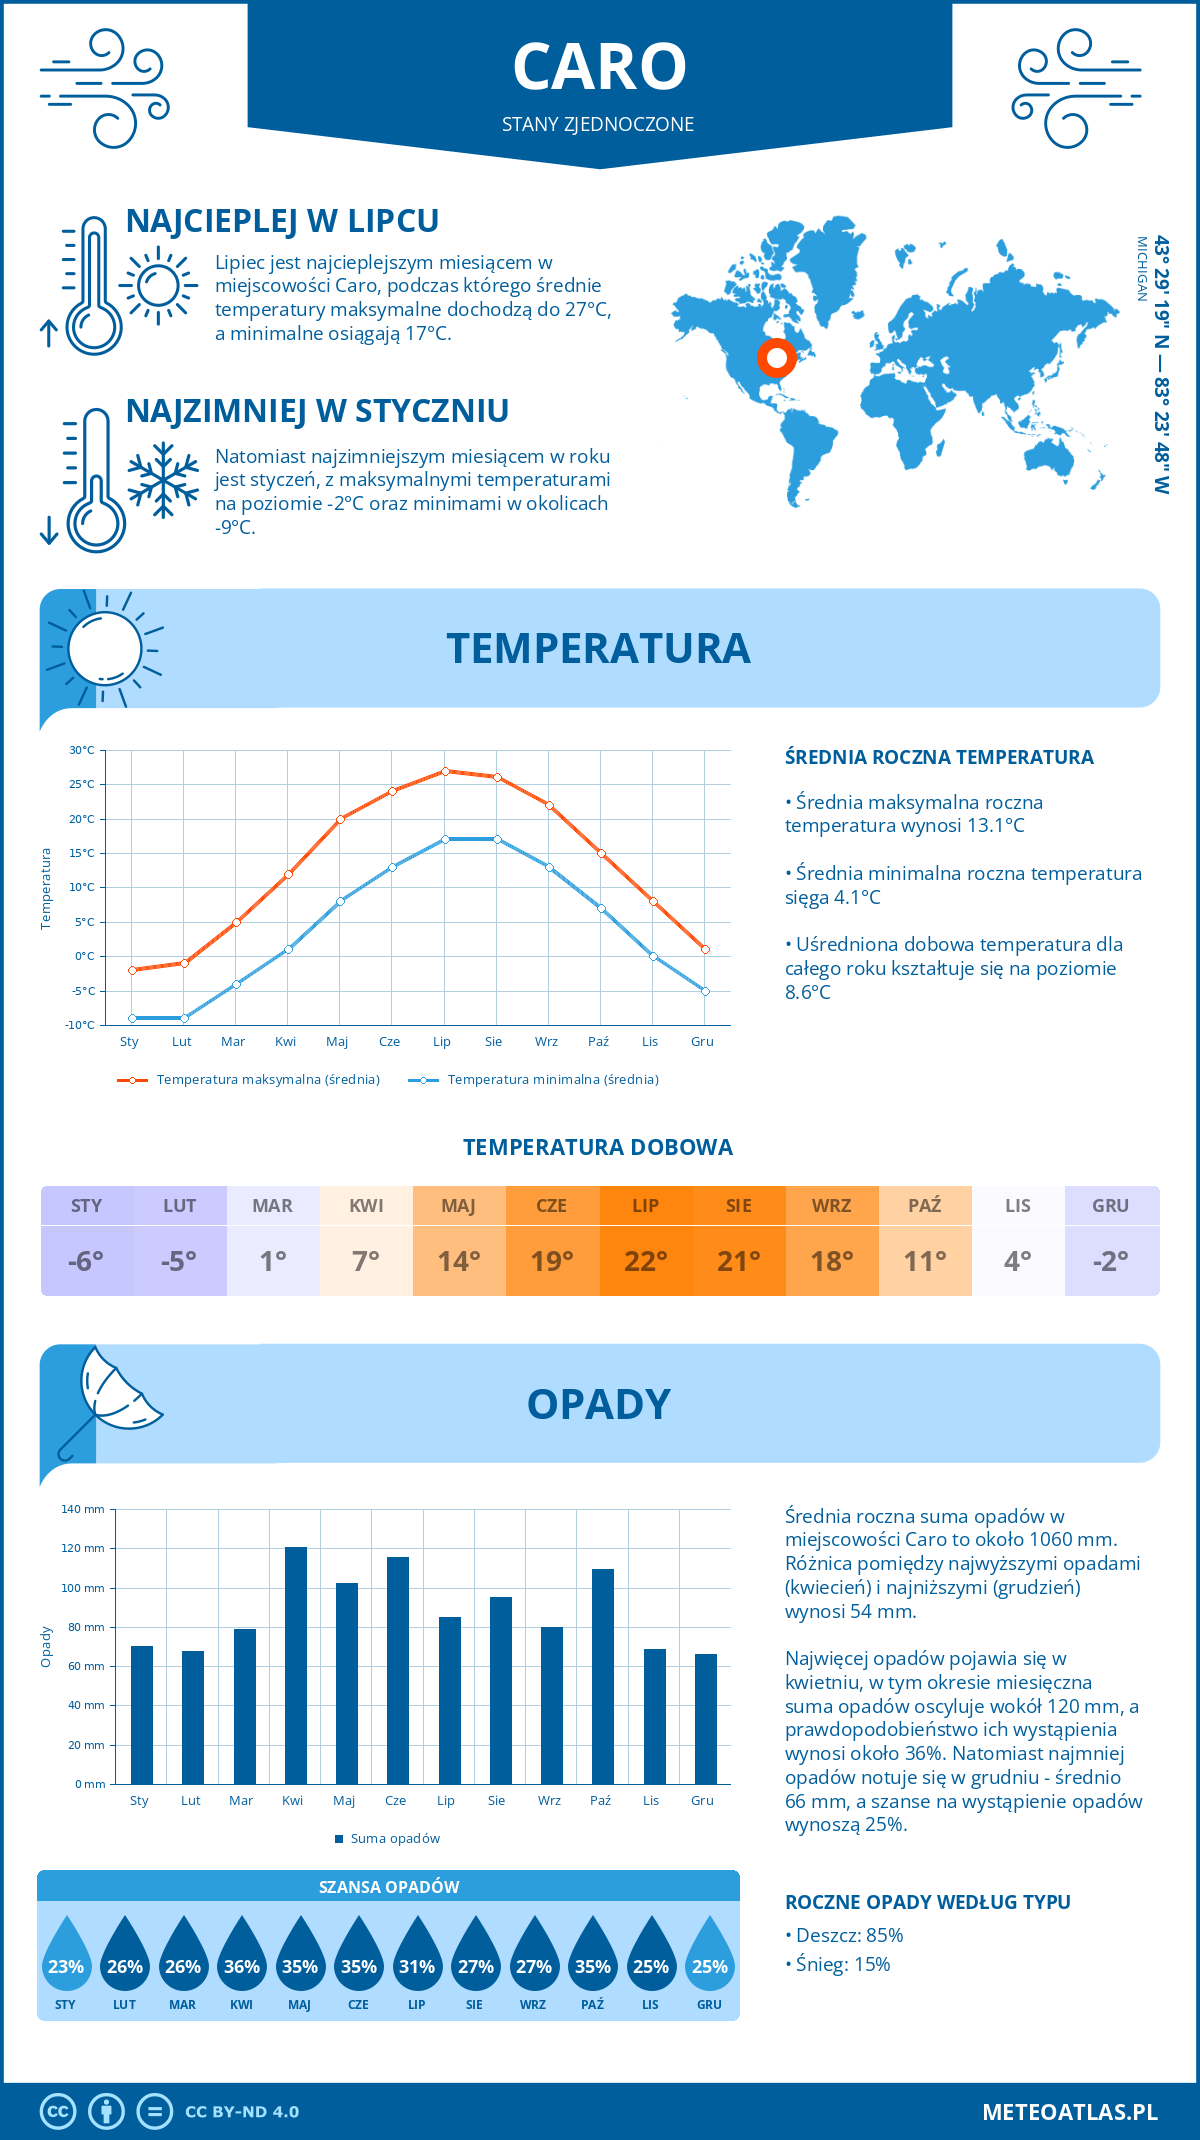 Pogoda Caro (Stany Zjednoczone). Temperatura oraz opady.